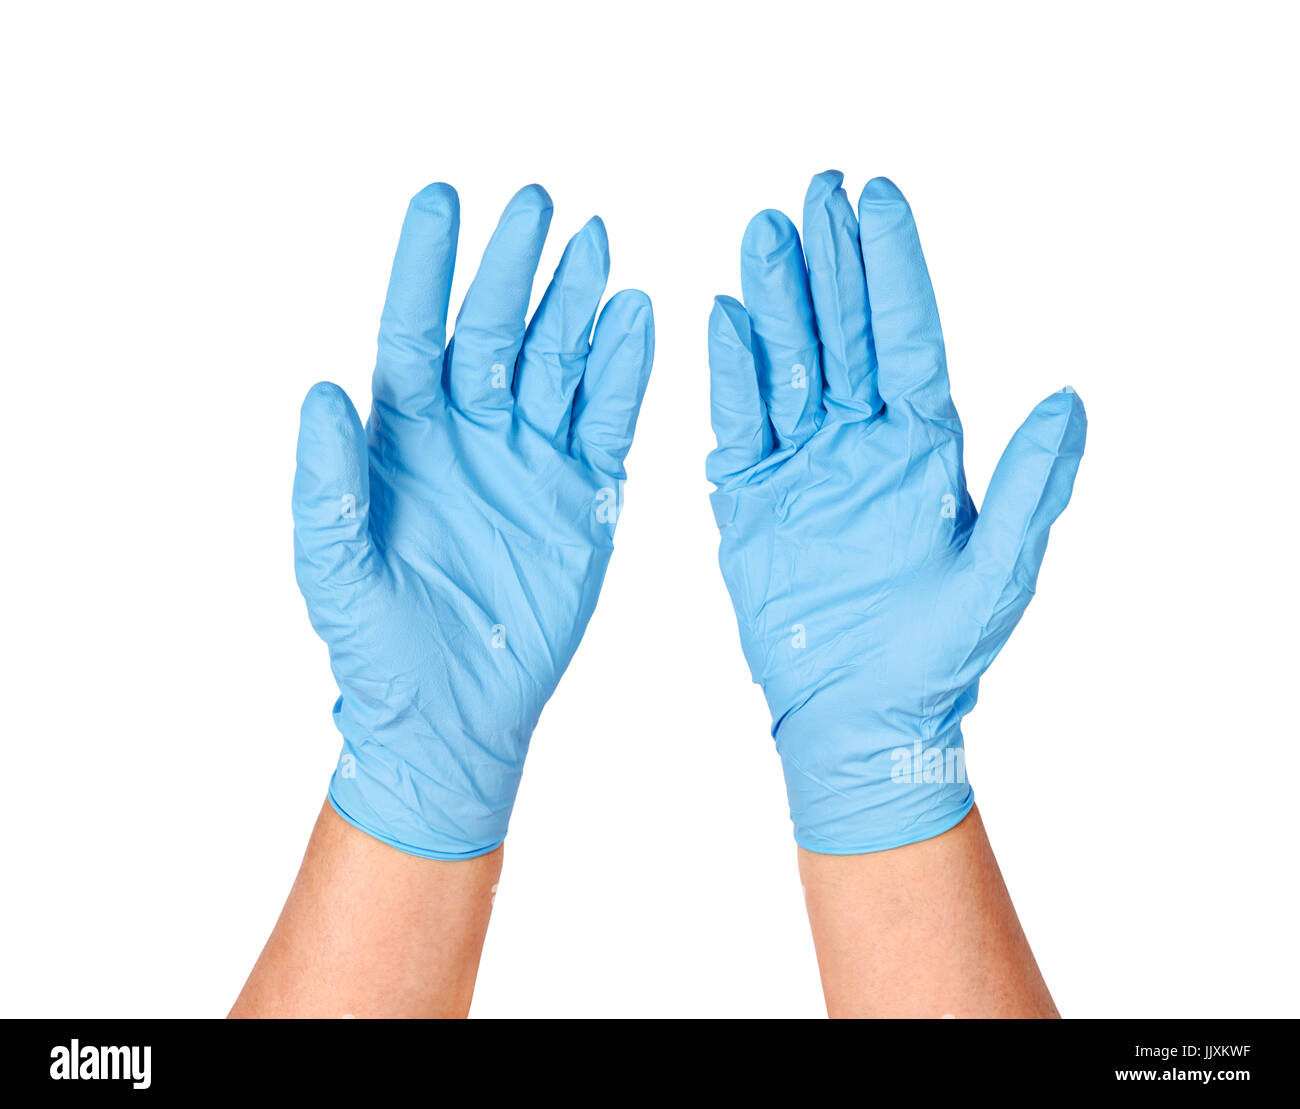 Mettre les mains sur des gants de protection, bleu isolé sur fond blanc. Enregistrer chemin de détourage. Banque D'Images